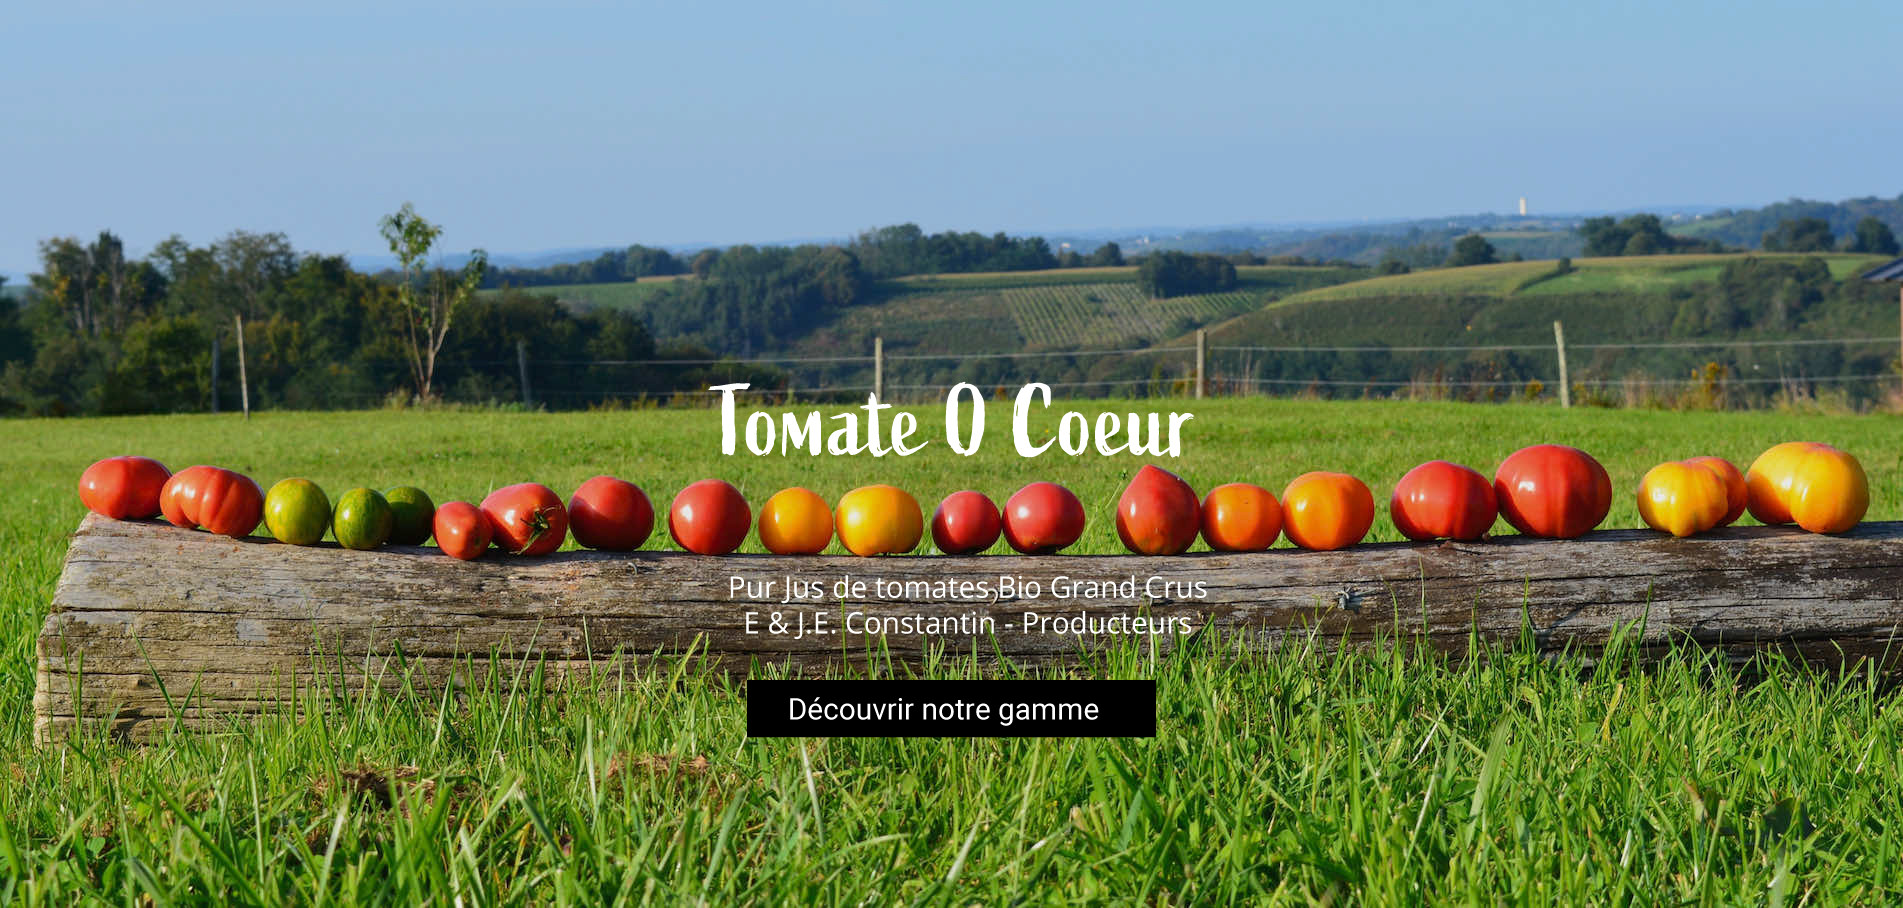 Pur jus de tomages Bio grand crus - E & J.E. Constantin - Producteurs